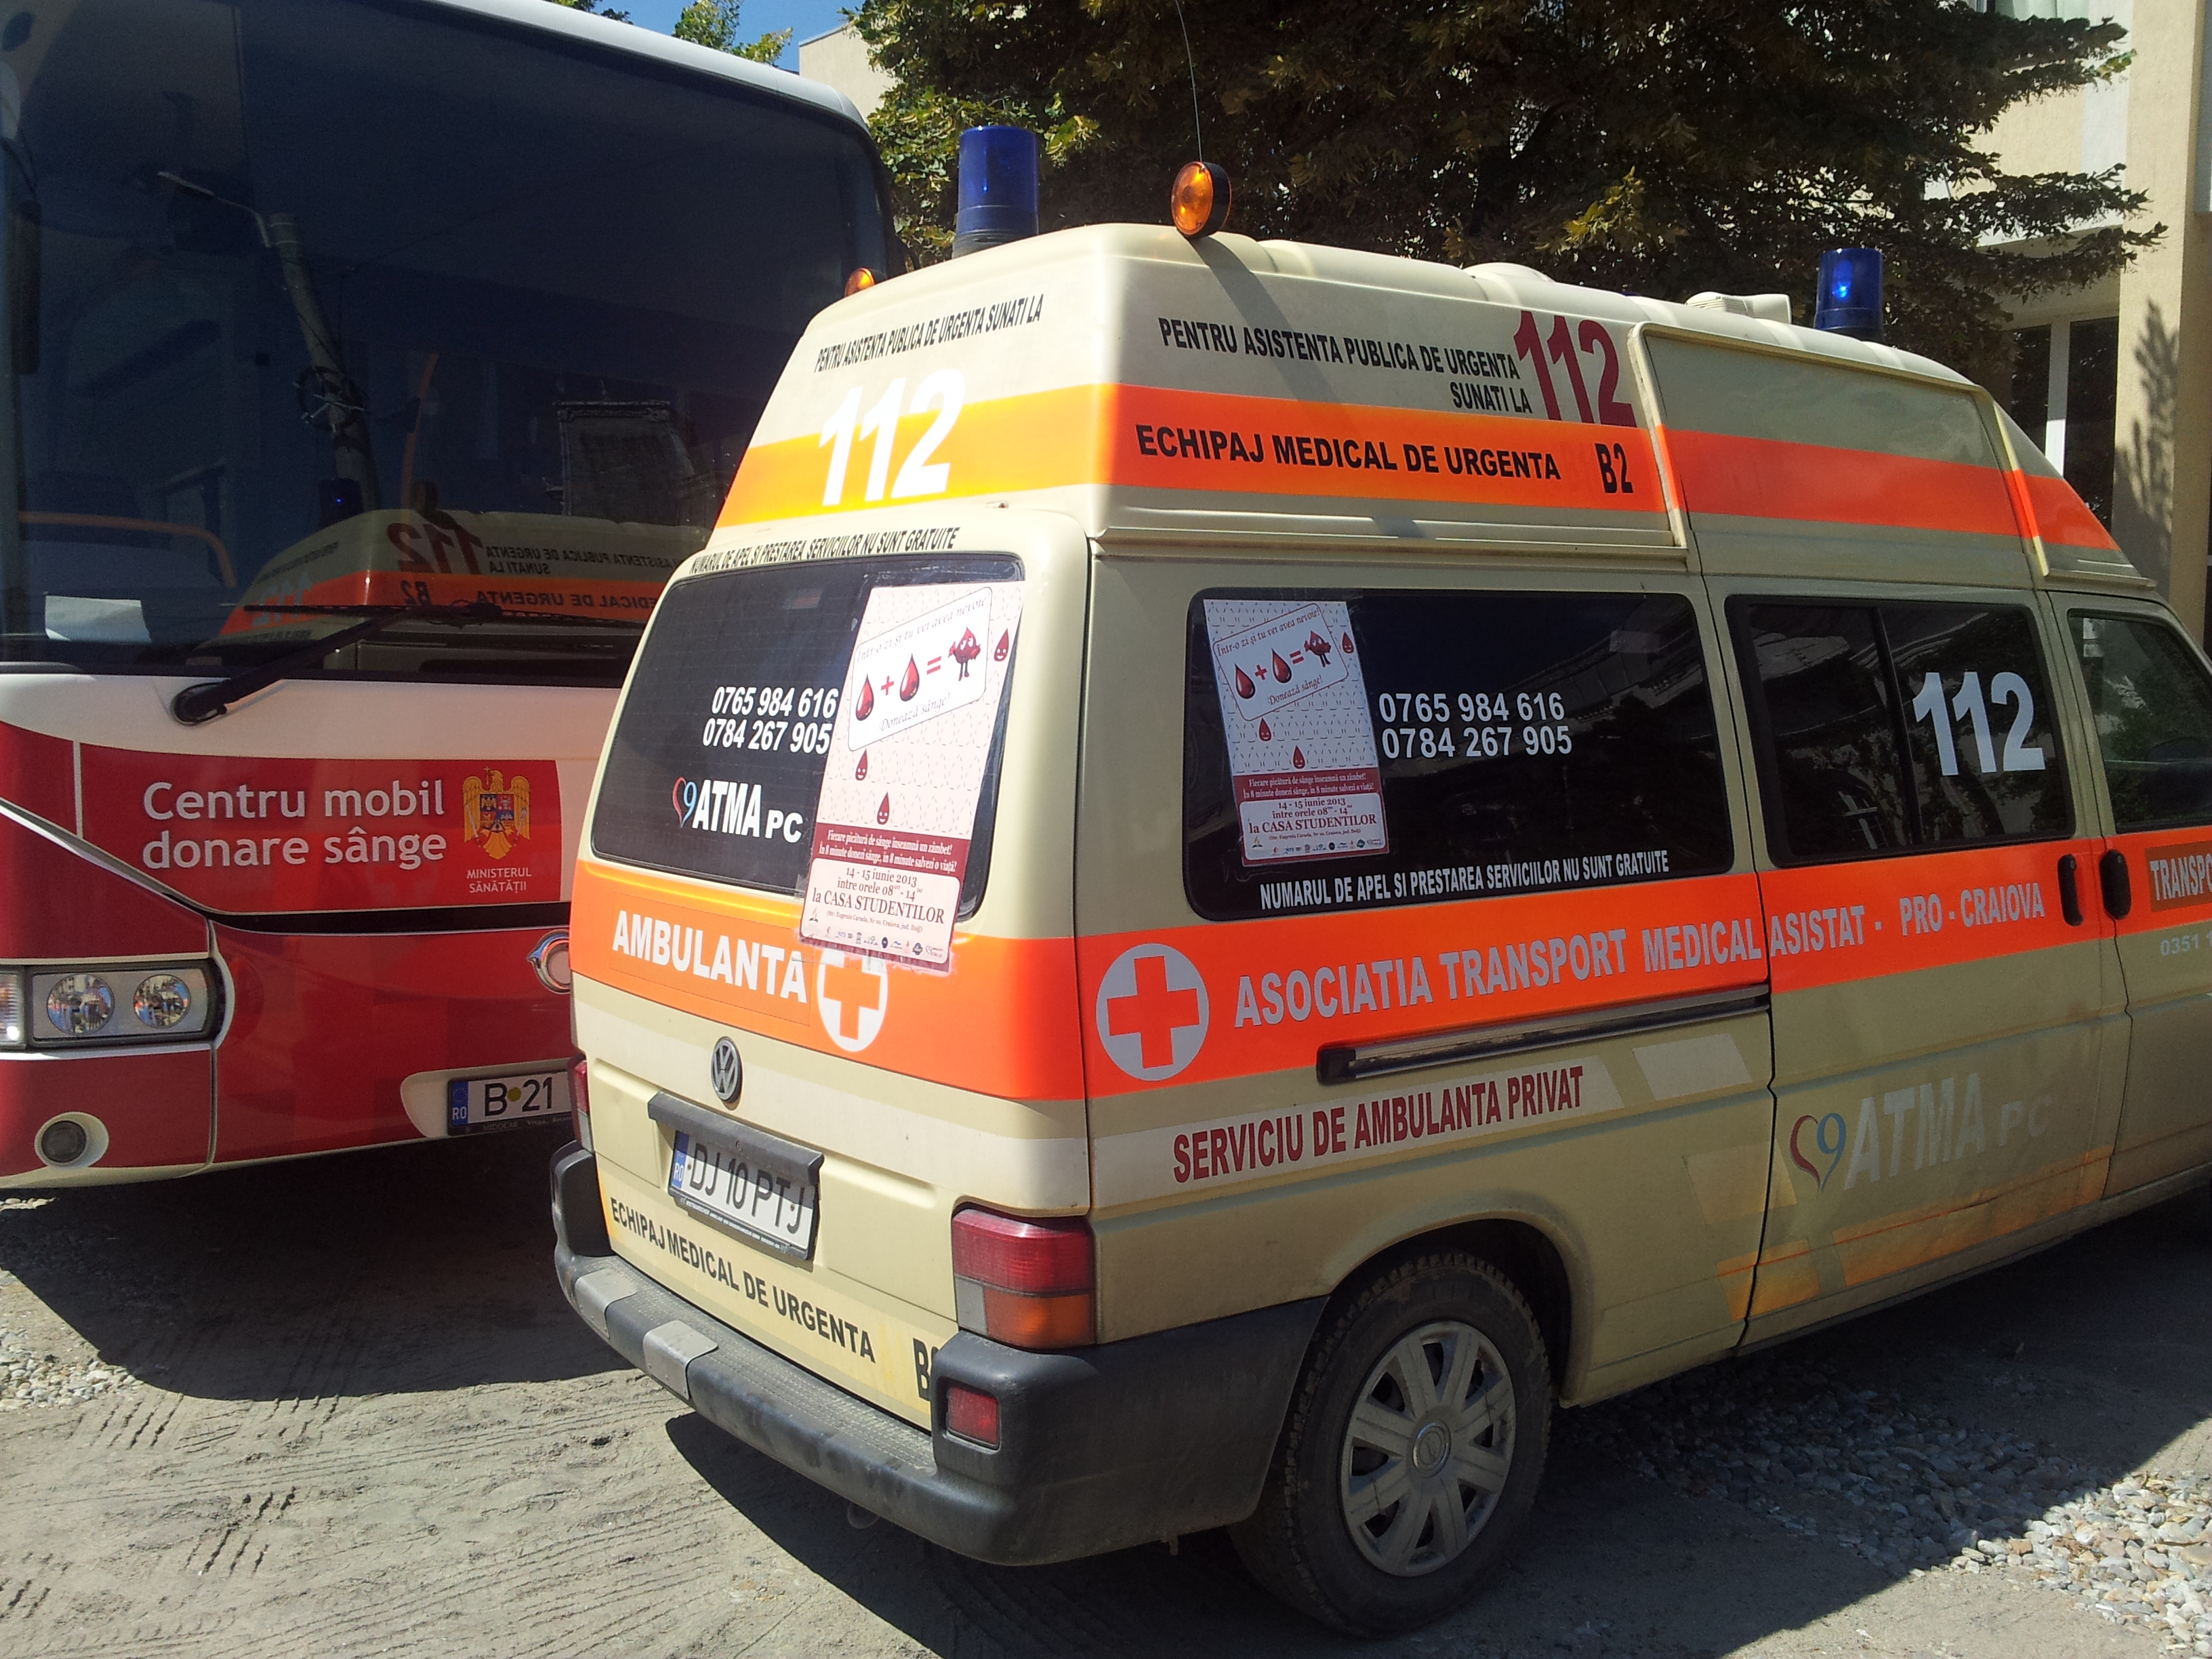 atma pc, ambulanta privata Craiova, doneaza sange